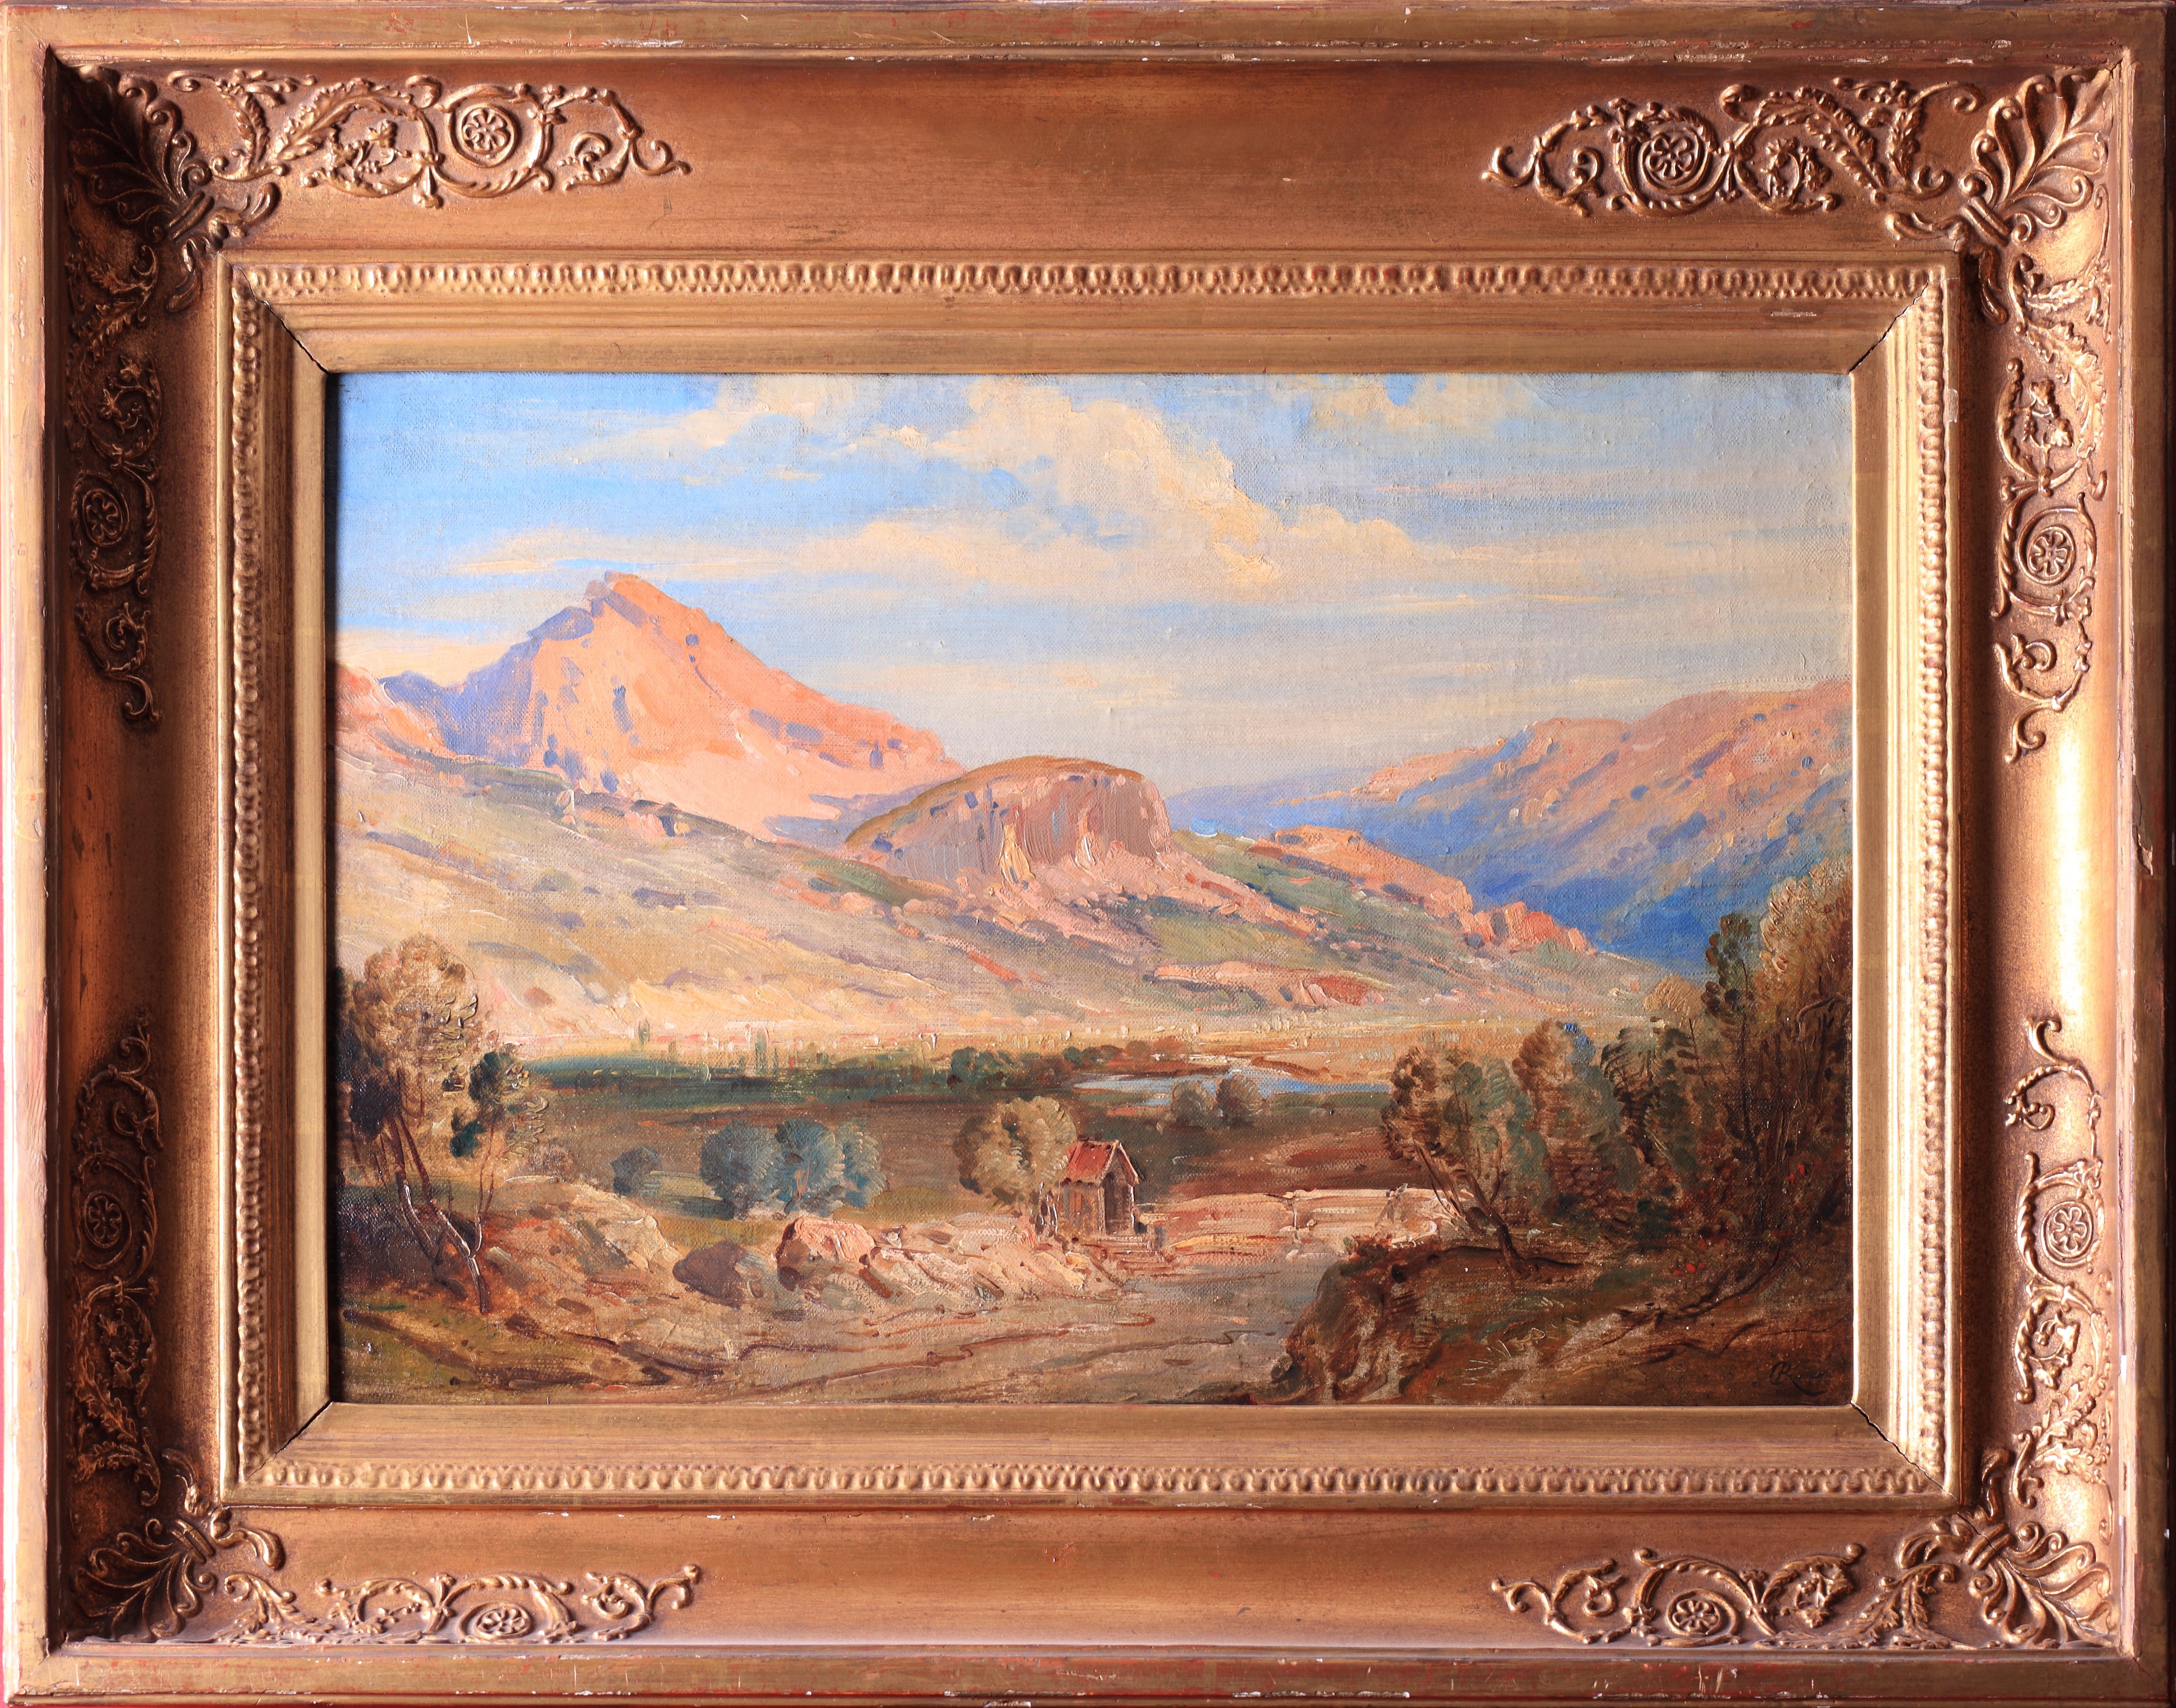 Griechische Landschaft von Carl Rottmann, um 1834-50. (Schloß Wernigerode GmbH RR-F)